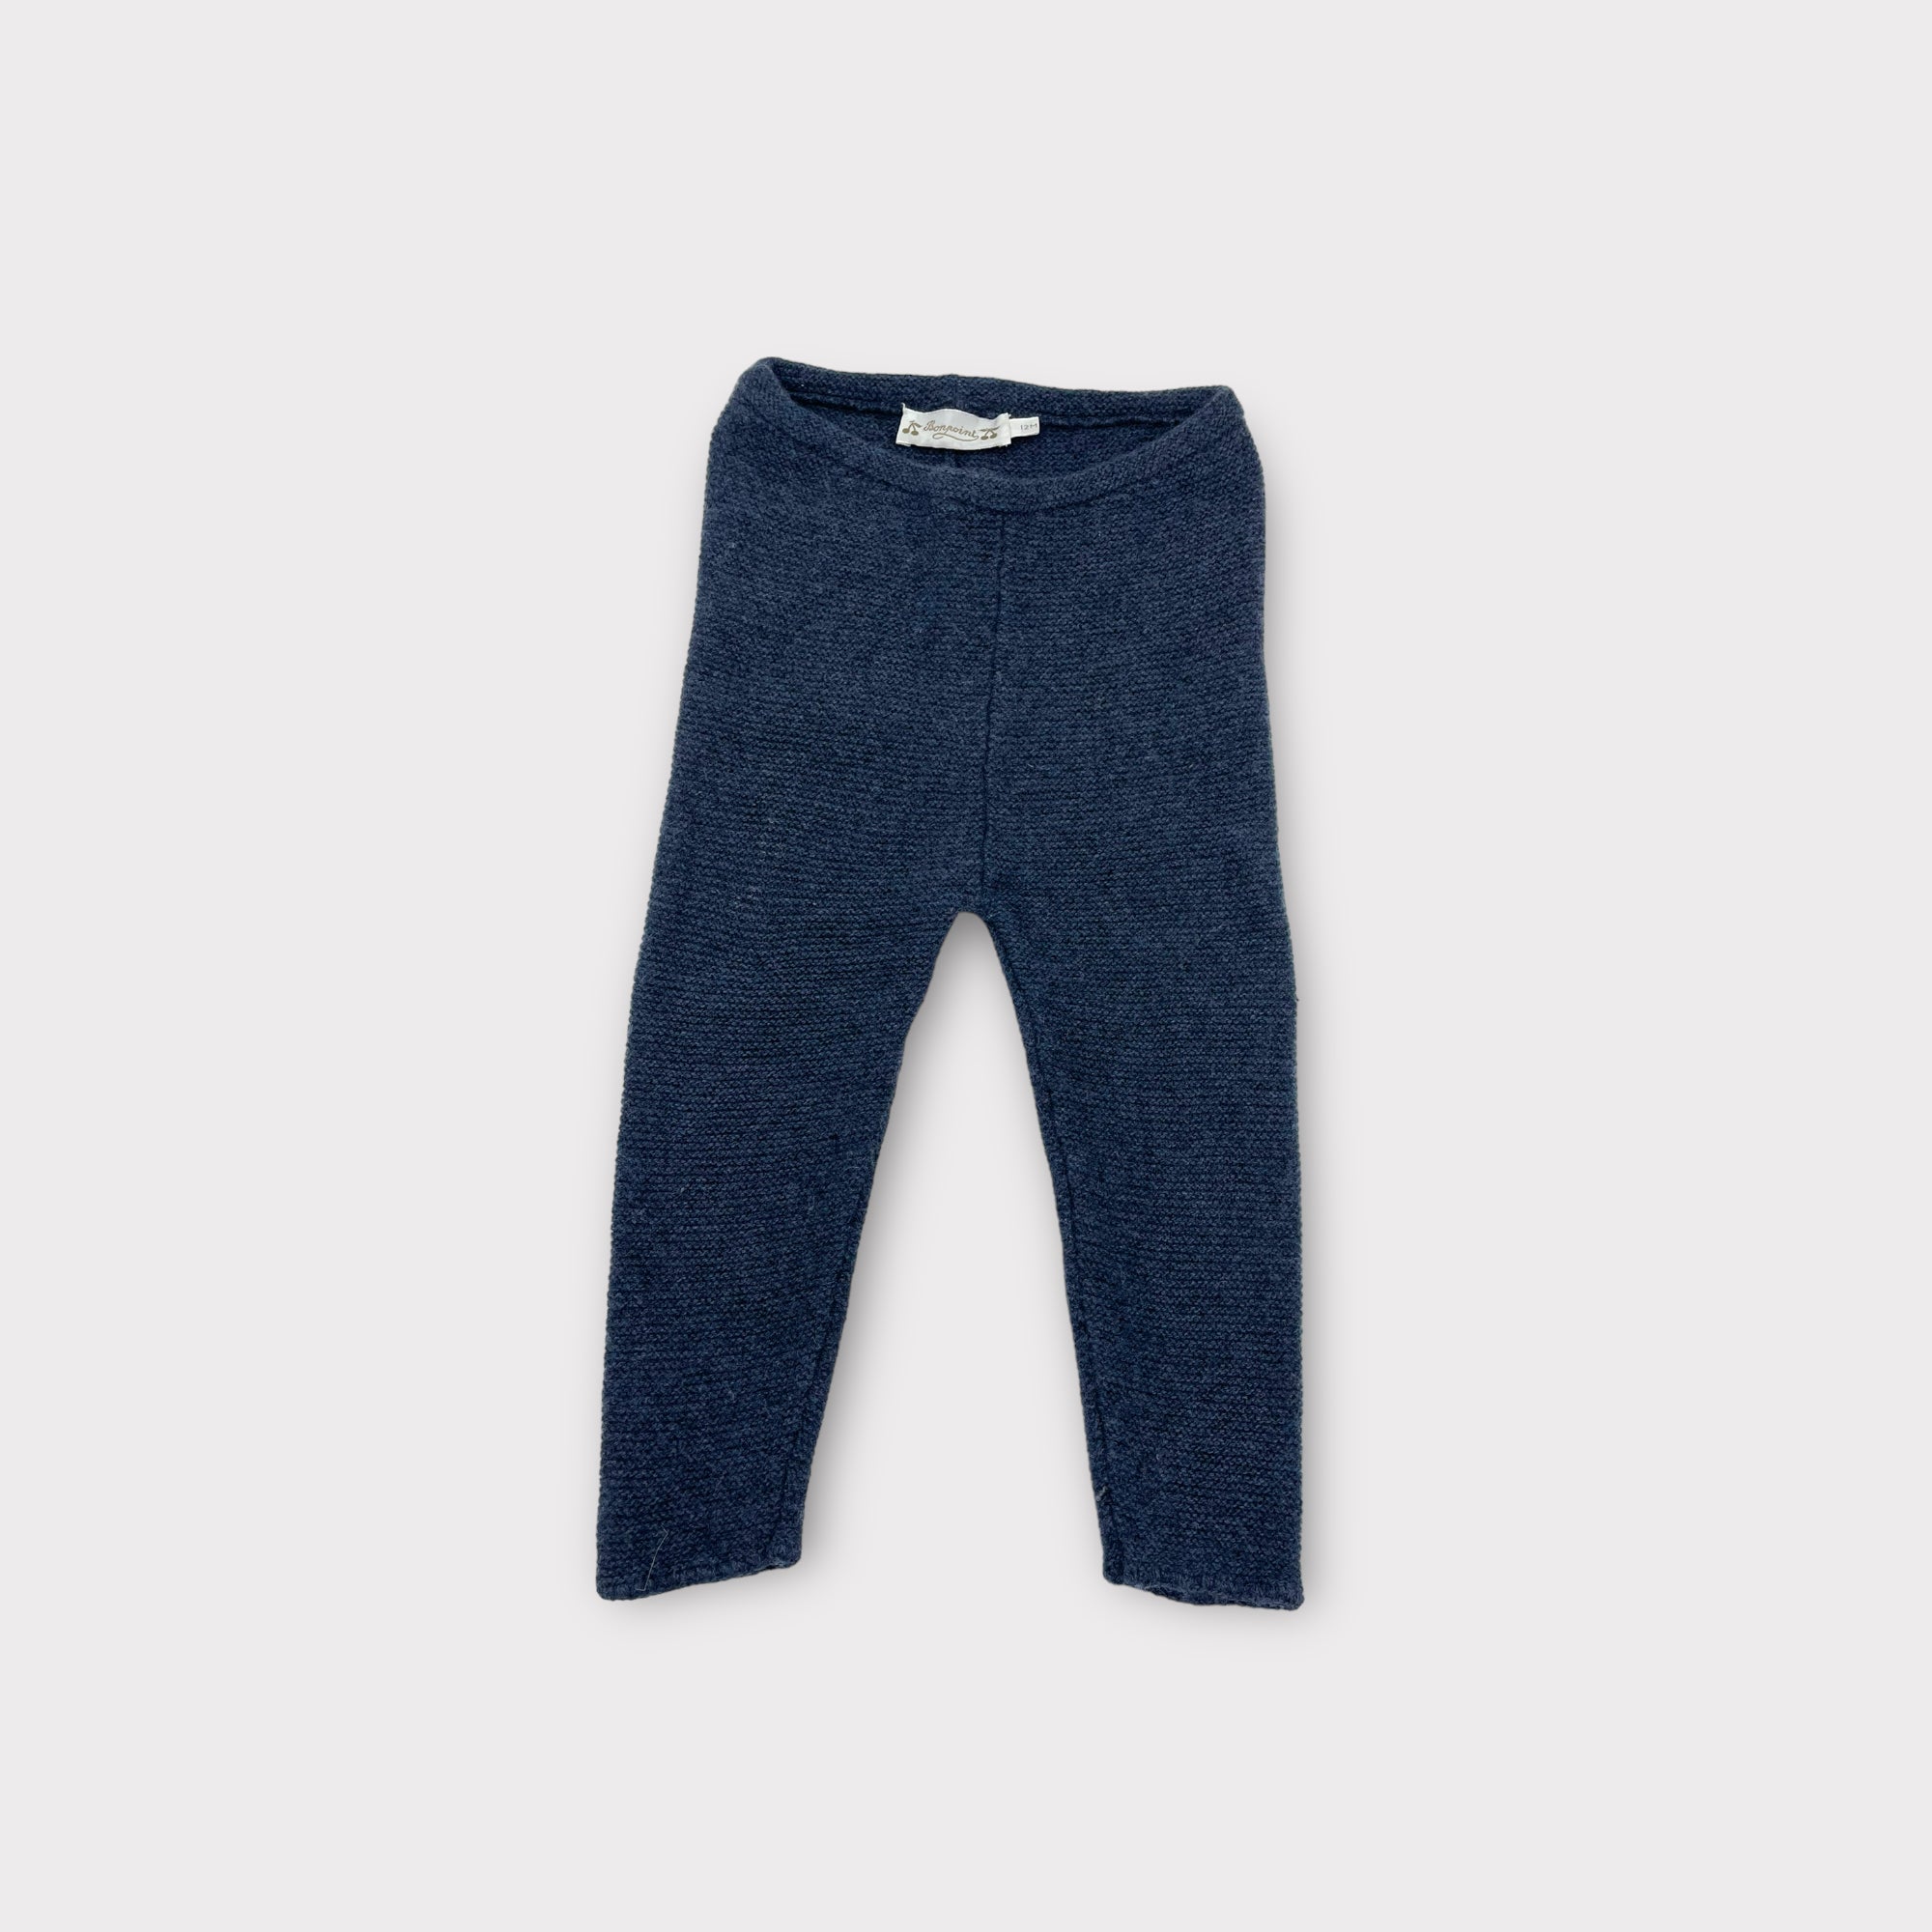 Pantalon Bonpoint 12 mois 100% laine